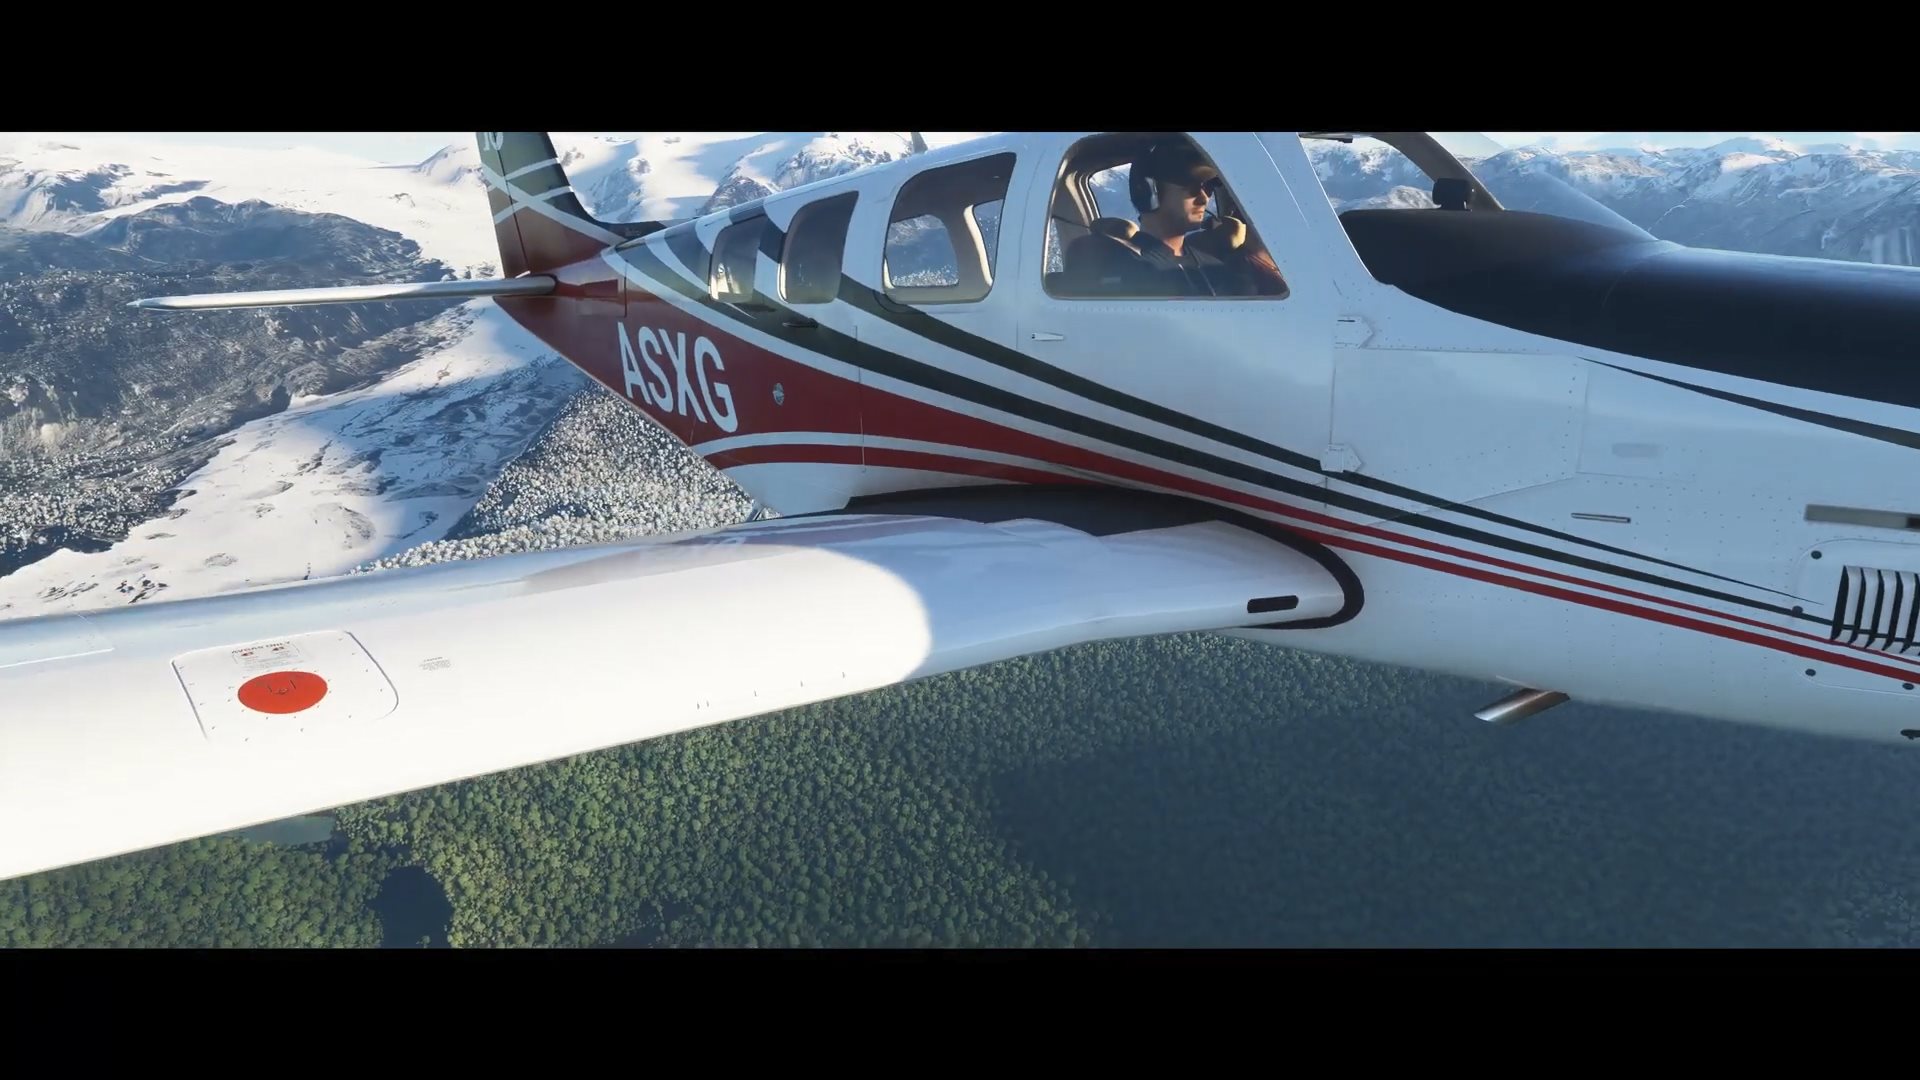 《微軟飛行模擬》加入冰雪天氣效果 與現實世界保持一致